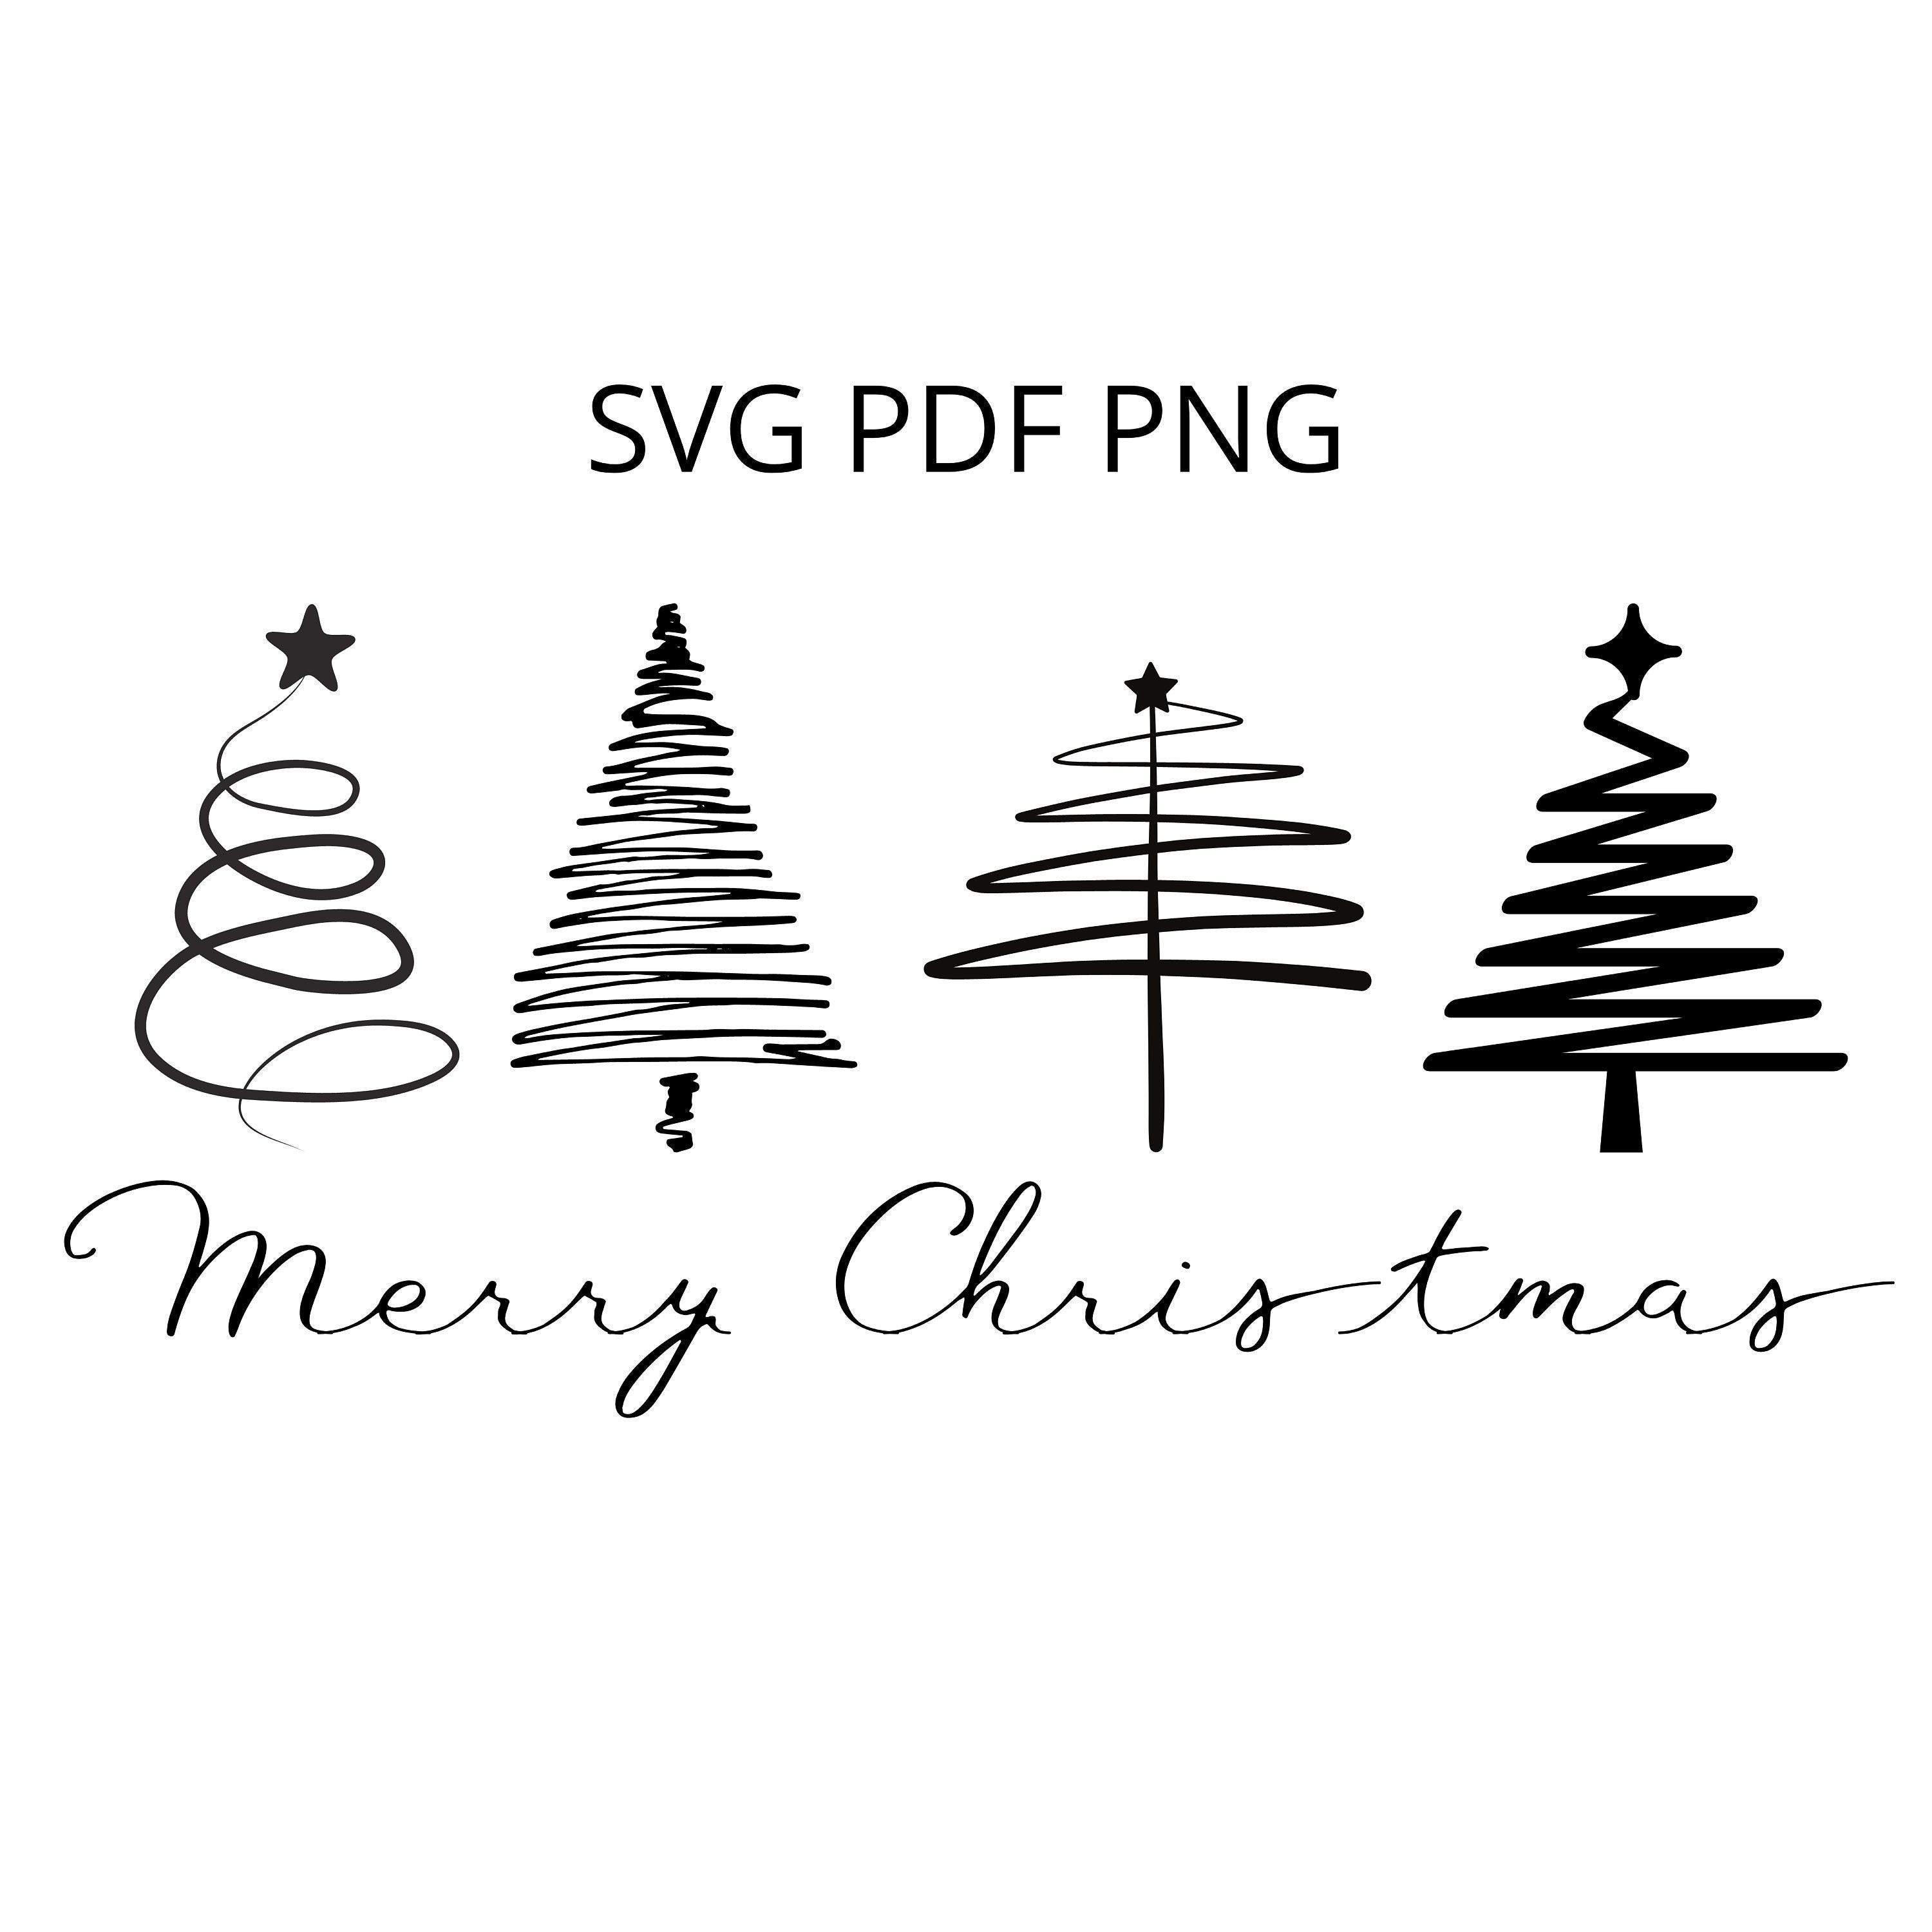 Merry Christmas svg, Christmas svg, dxf, png instant download, Christmas Trees svg, Christmas Saying svg, Christmas Shirt svg, Holiday svg